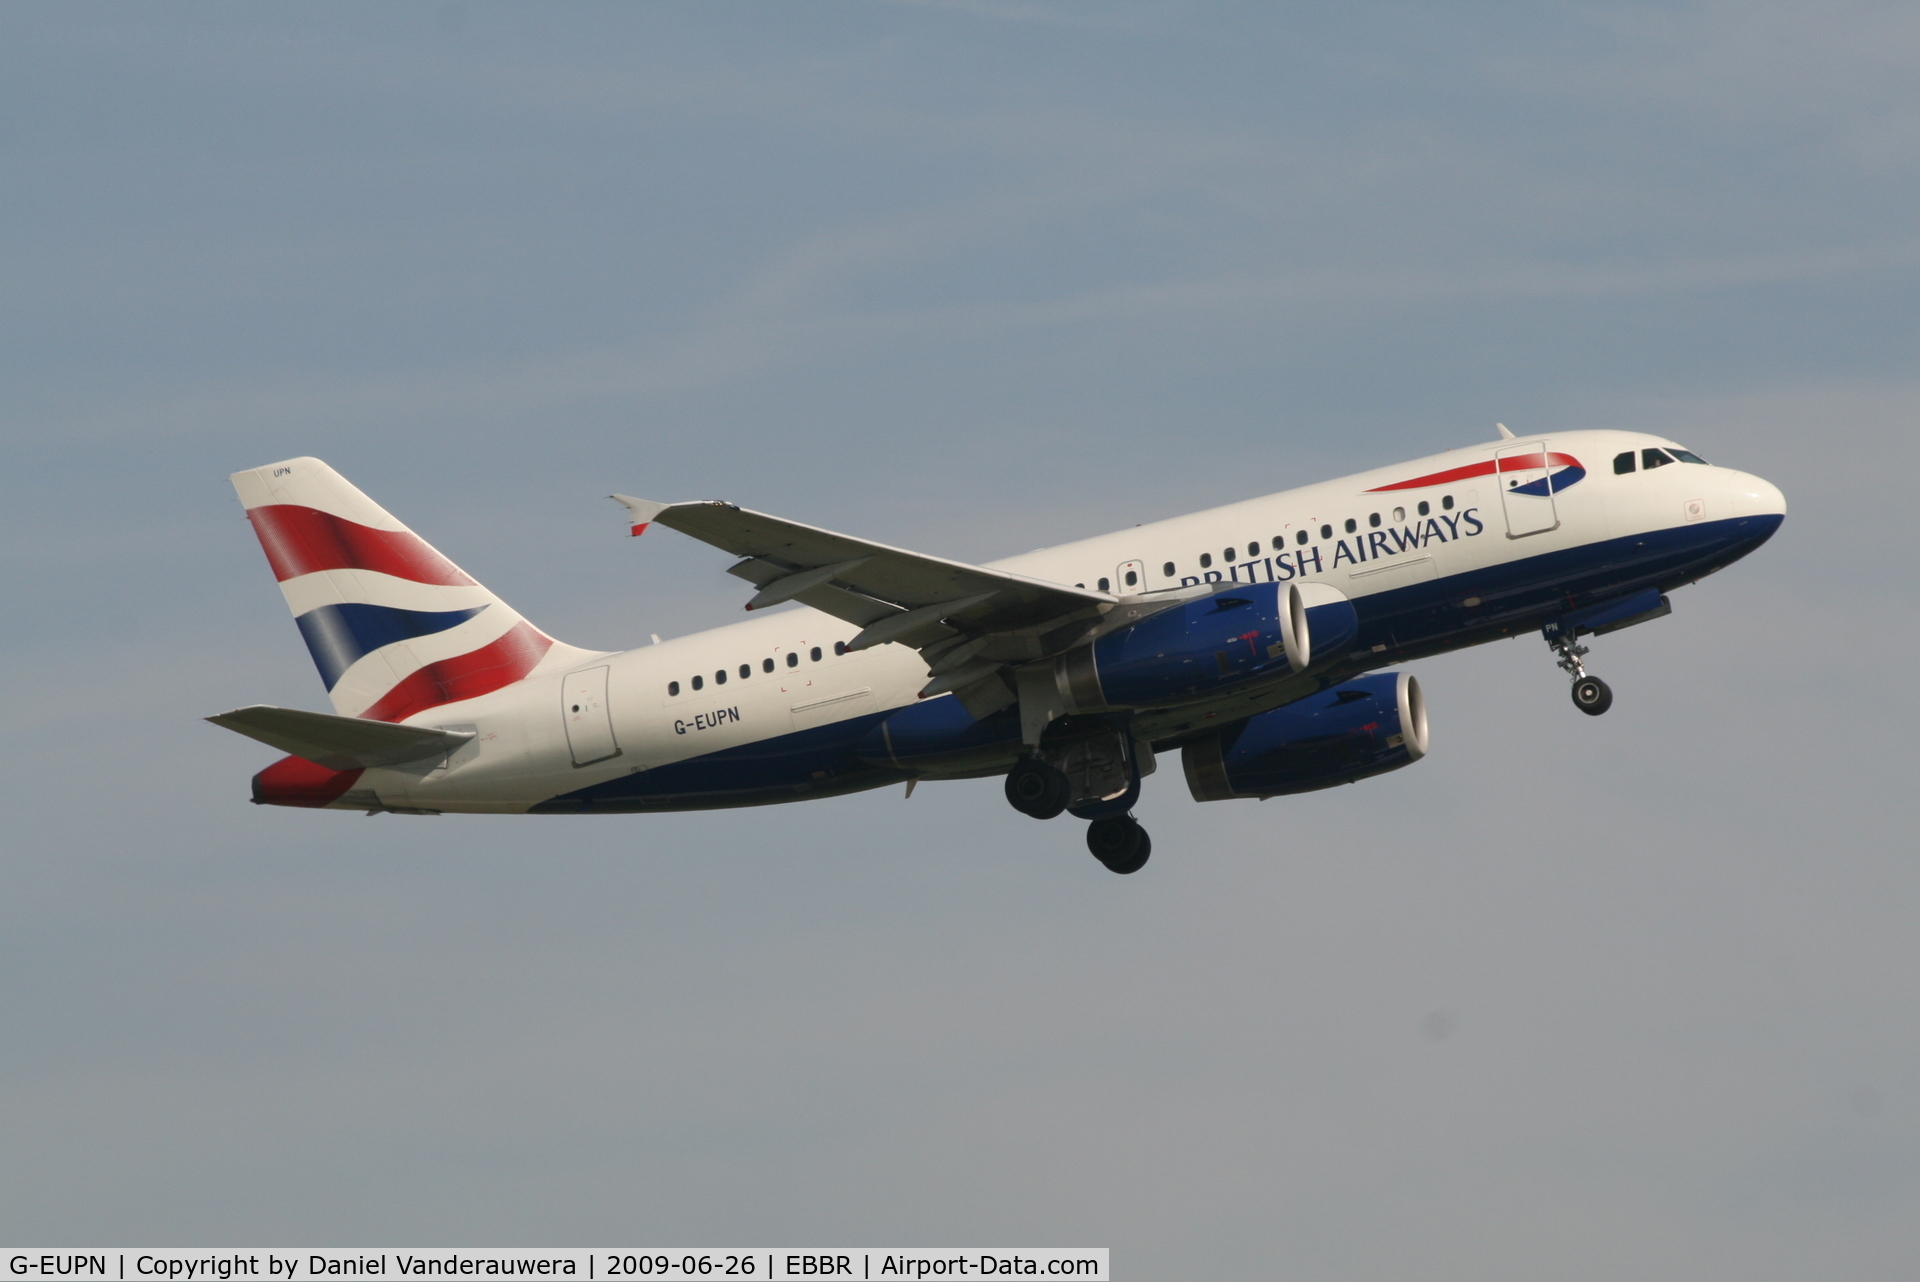 G-EUPN, 2000 Airbus A319-131 C/N 1261, Flight BA391 is taking off from rwy 07R